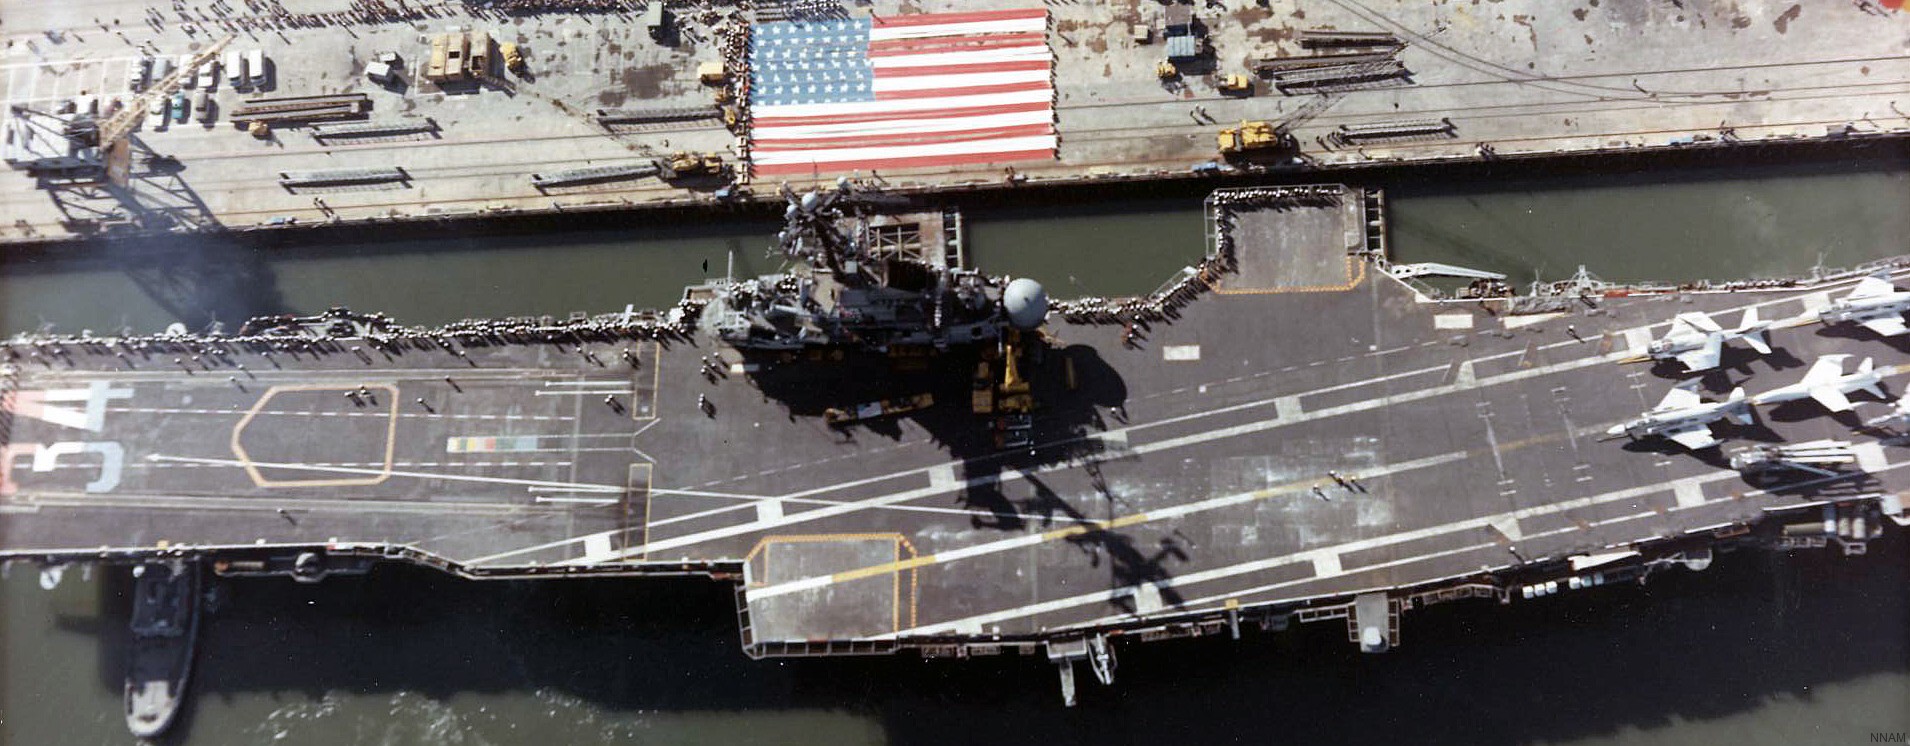 cv-34 uss oriskany essex class aircraft carrier us navy nas alameda california final deployment 33